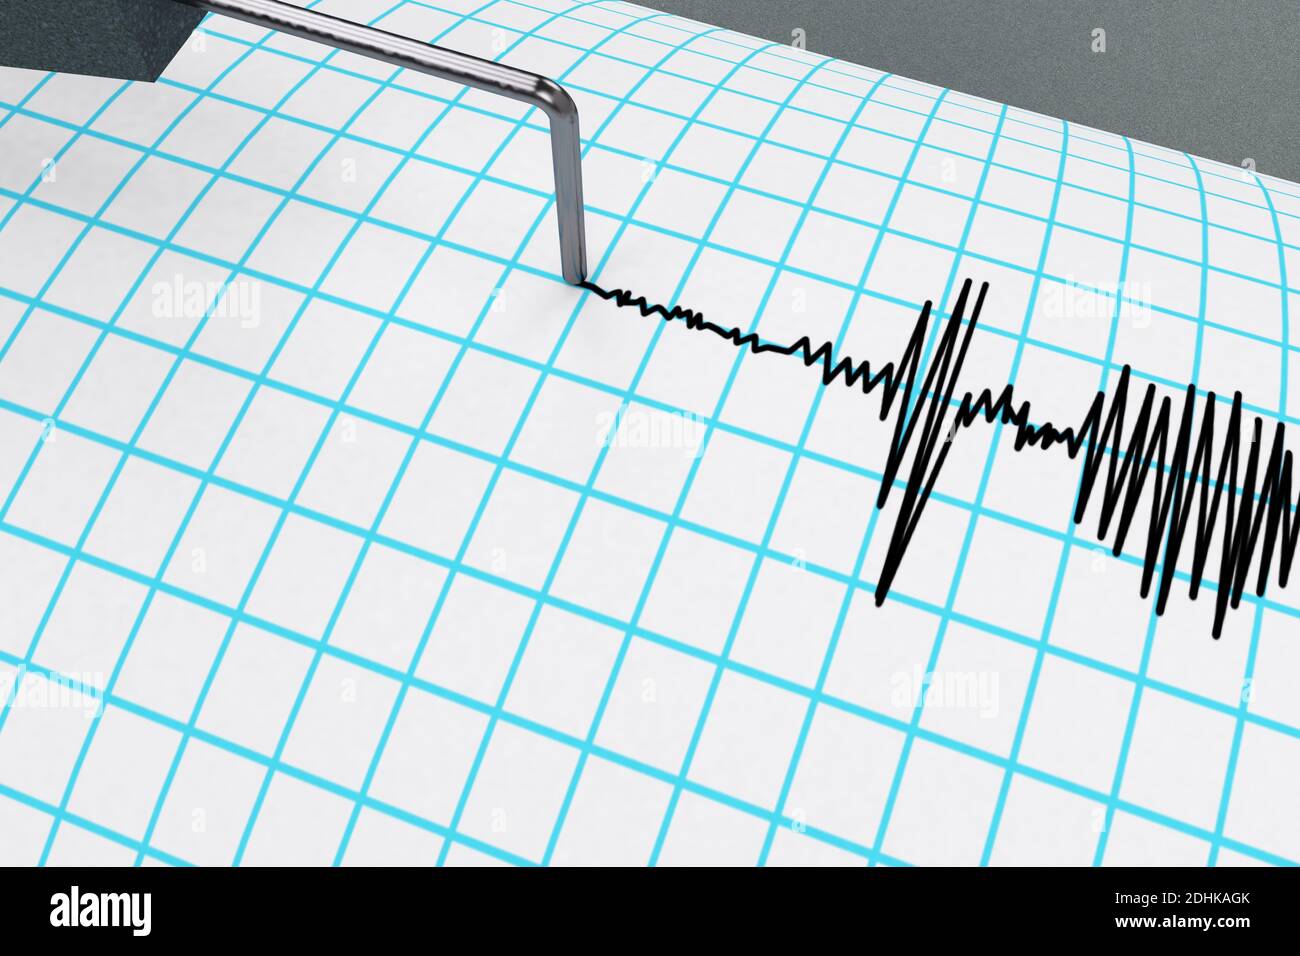 Seismograph, der die Kurve verfolgt, die seismische Aktivität anzeigt, zeichnet die Wellen auf dem 3D-RENDER der Trommel auf. Stockfoto